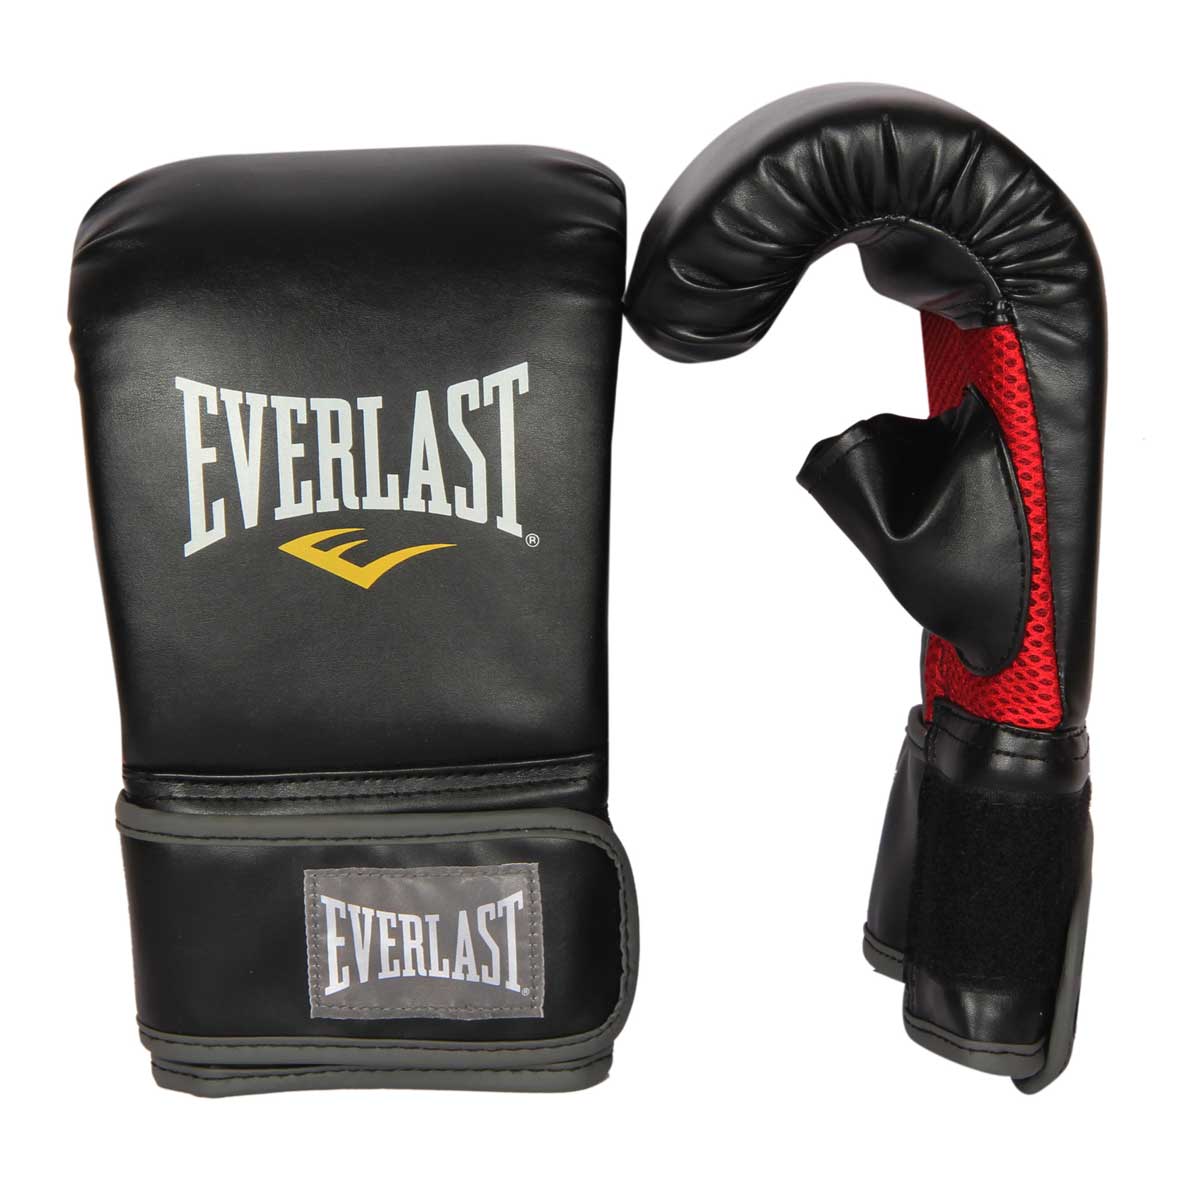 Buy Everlast MMA Heavy Bag Gloves Online India| Everlast Boxing Gloves